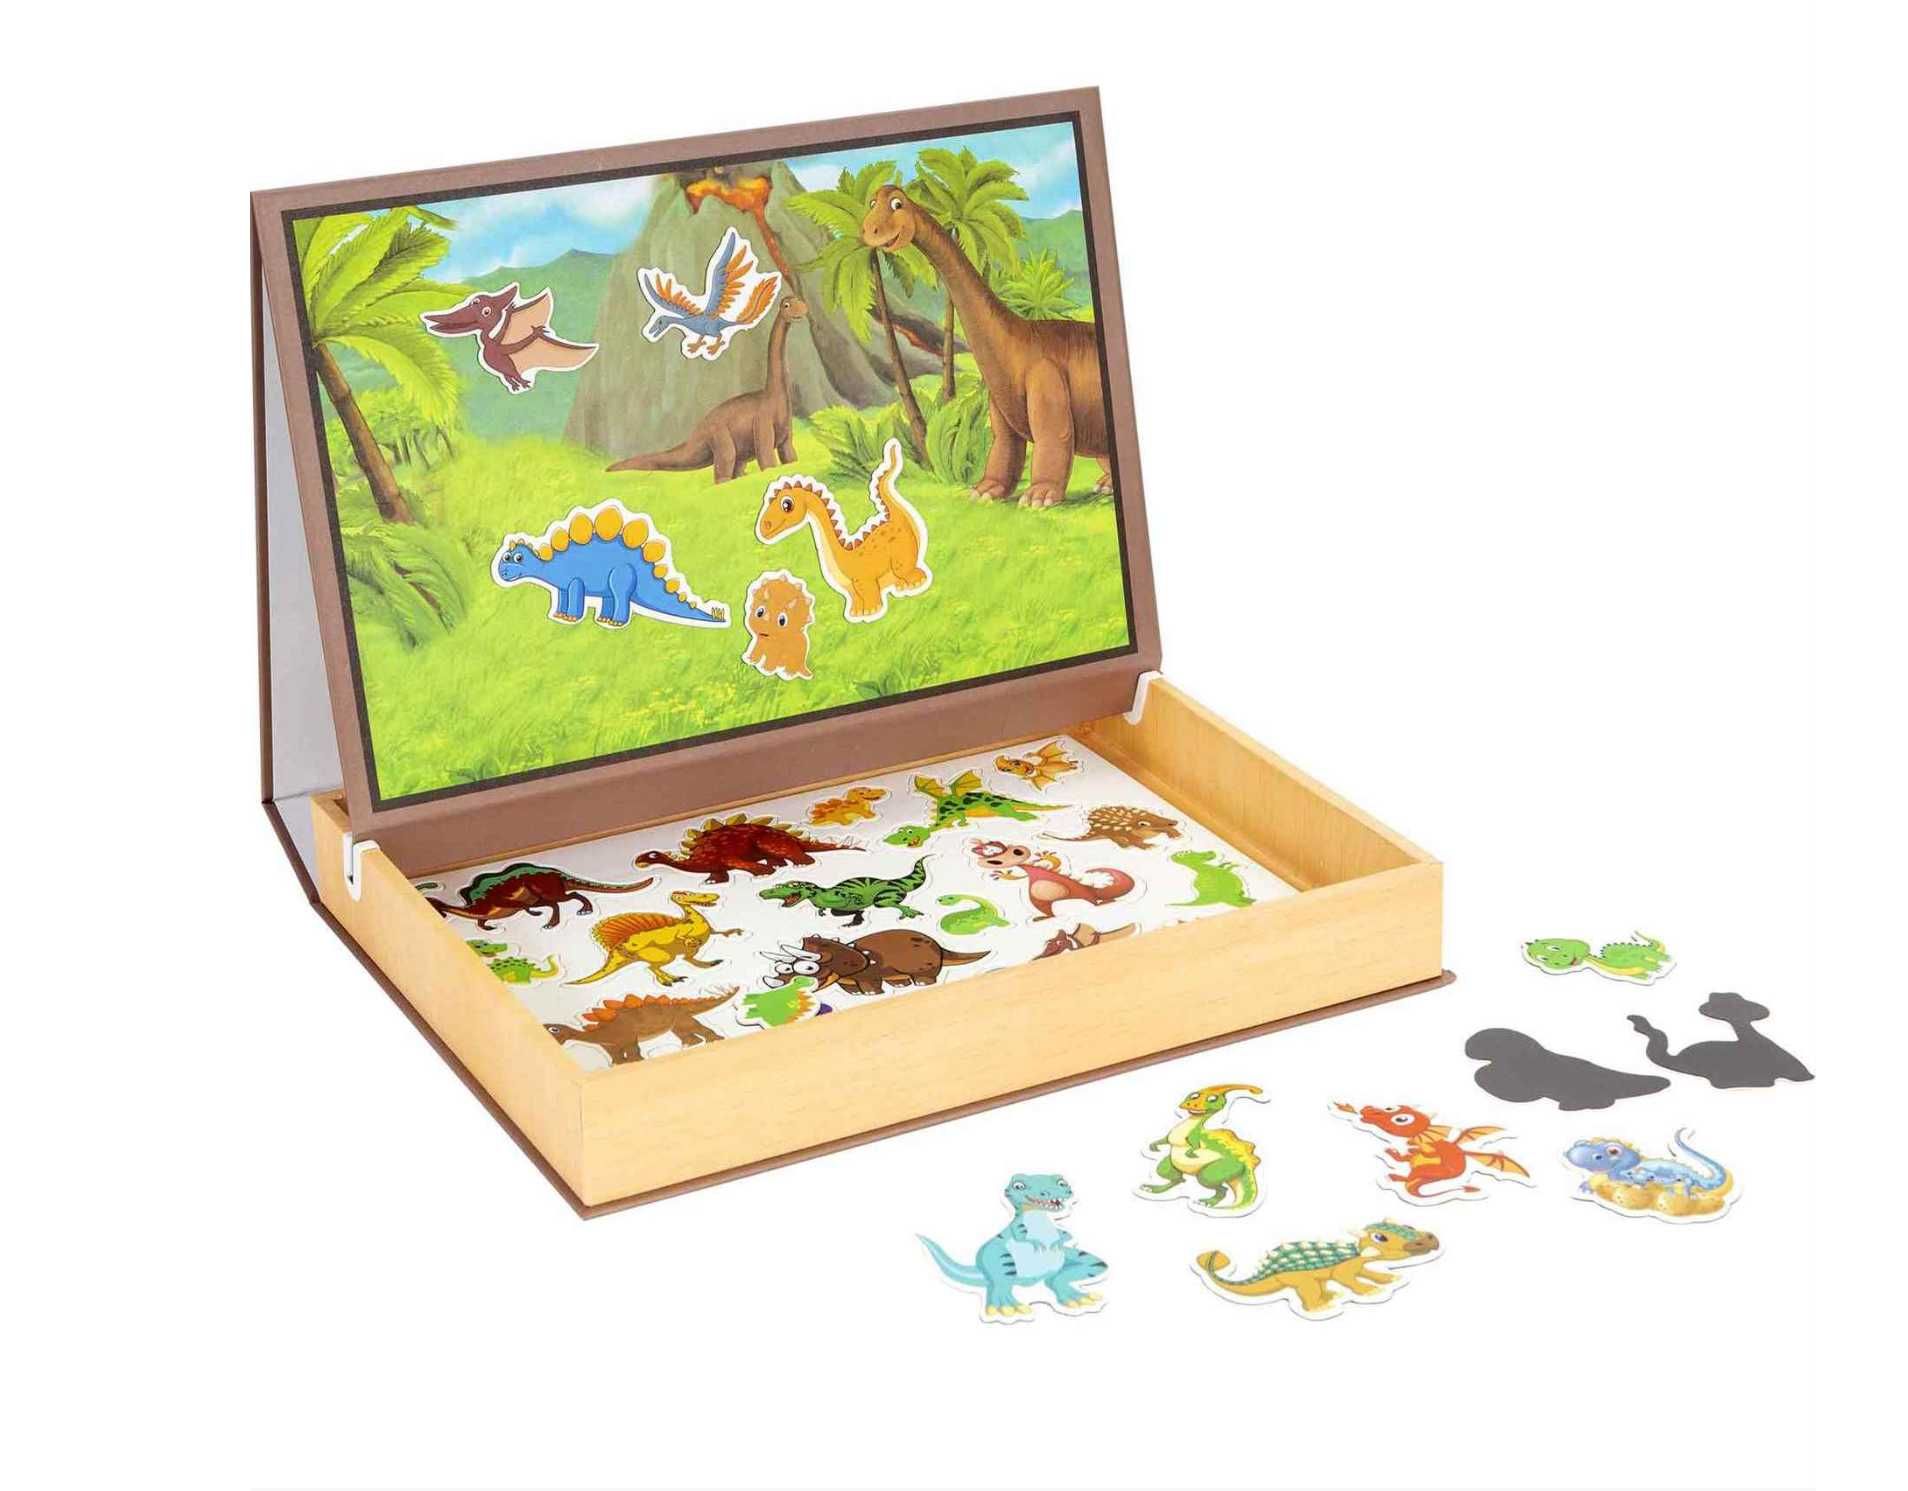 НОВО! Дигитална дървена кутия с магнити на динозаври / всички играчки